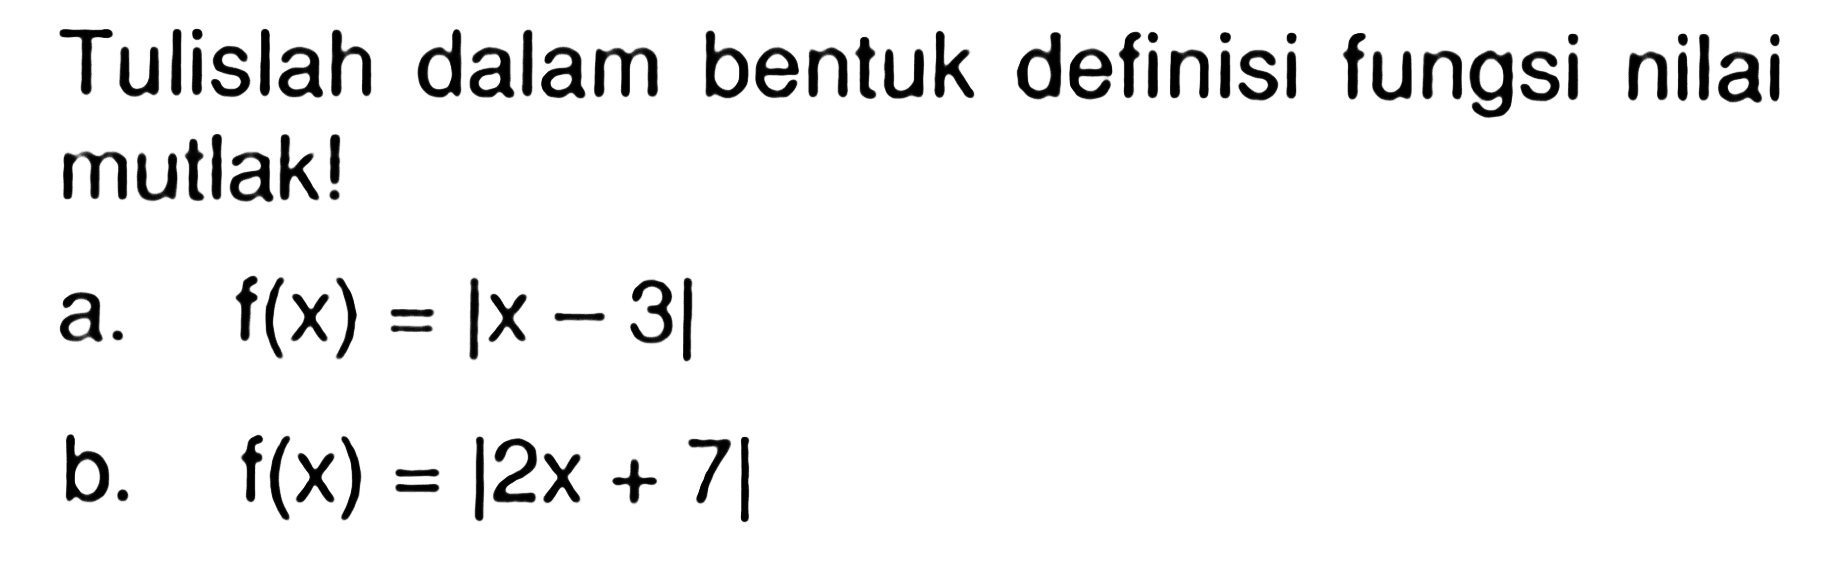 Tulislah dalam bentuk definisi fungsi nilai mutlak! a. f(x)=|x-3| b. f(x)=|2x+7|